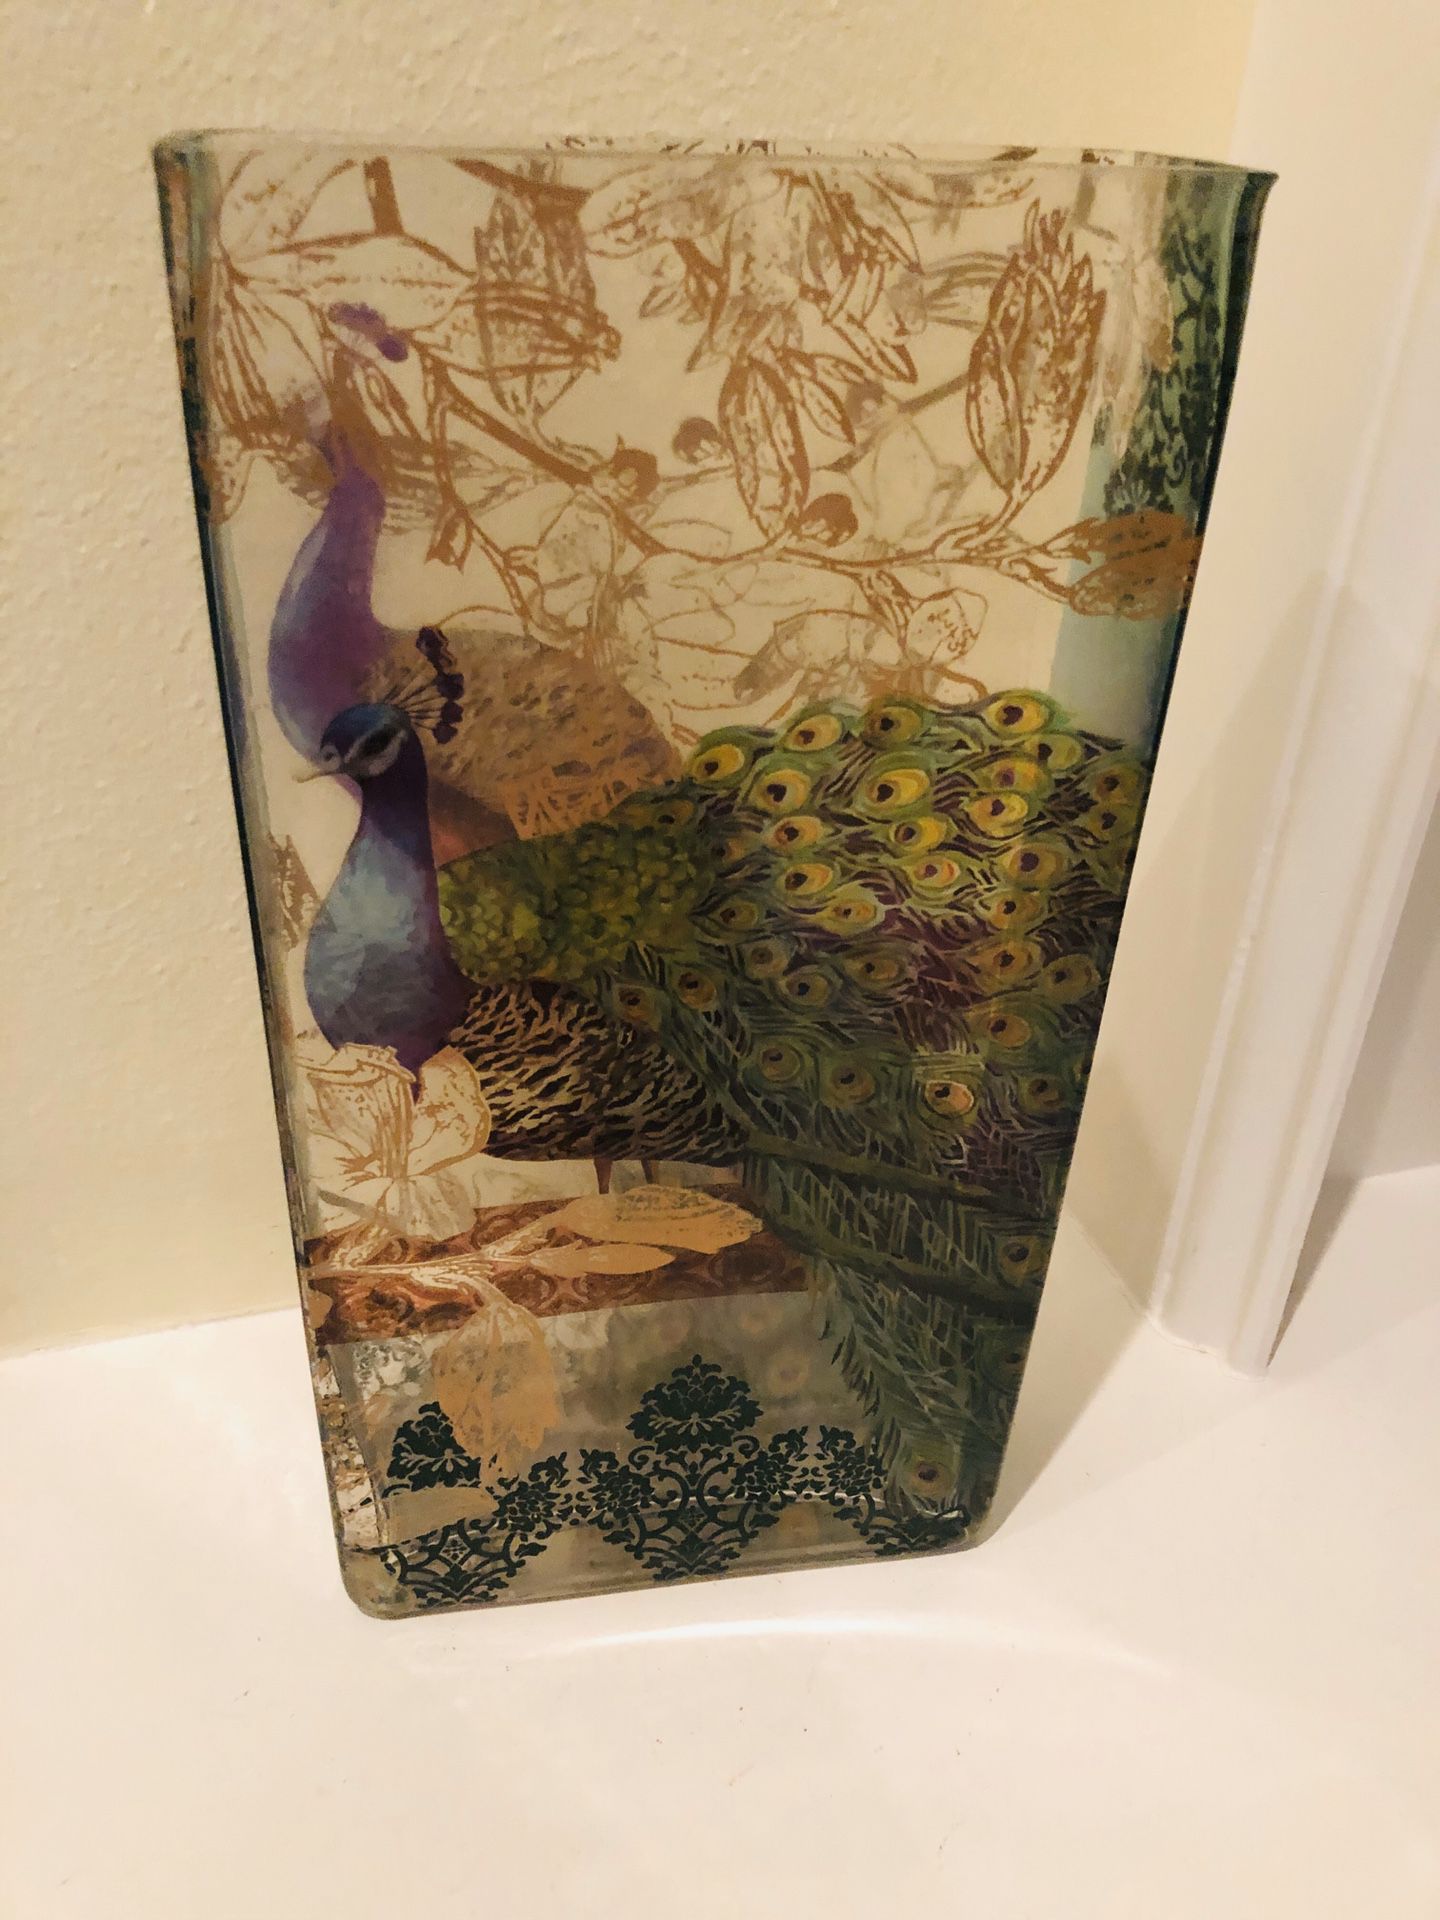 Peacock design glass vase - 12” T